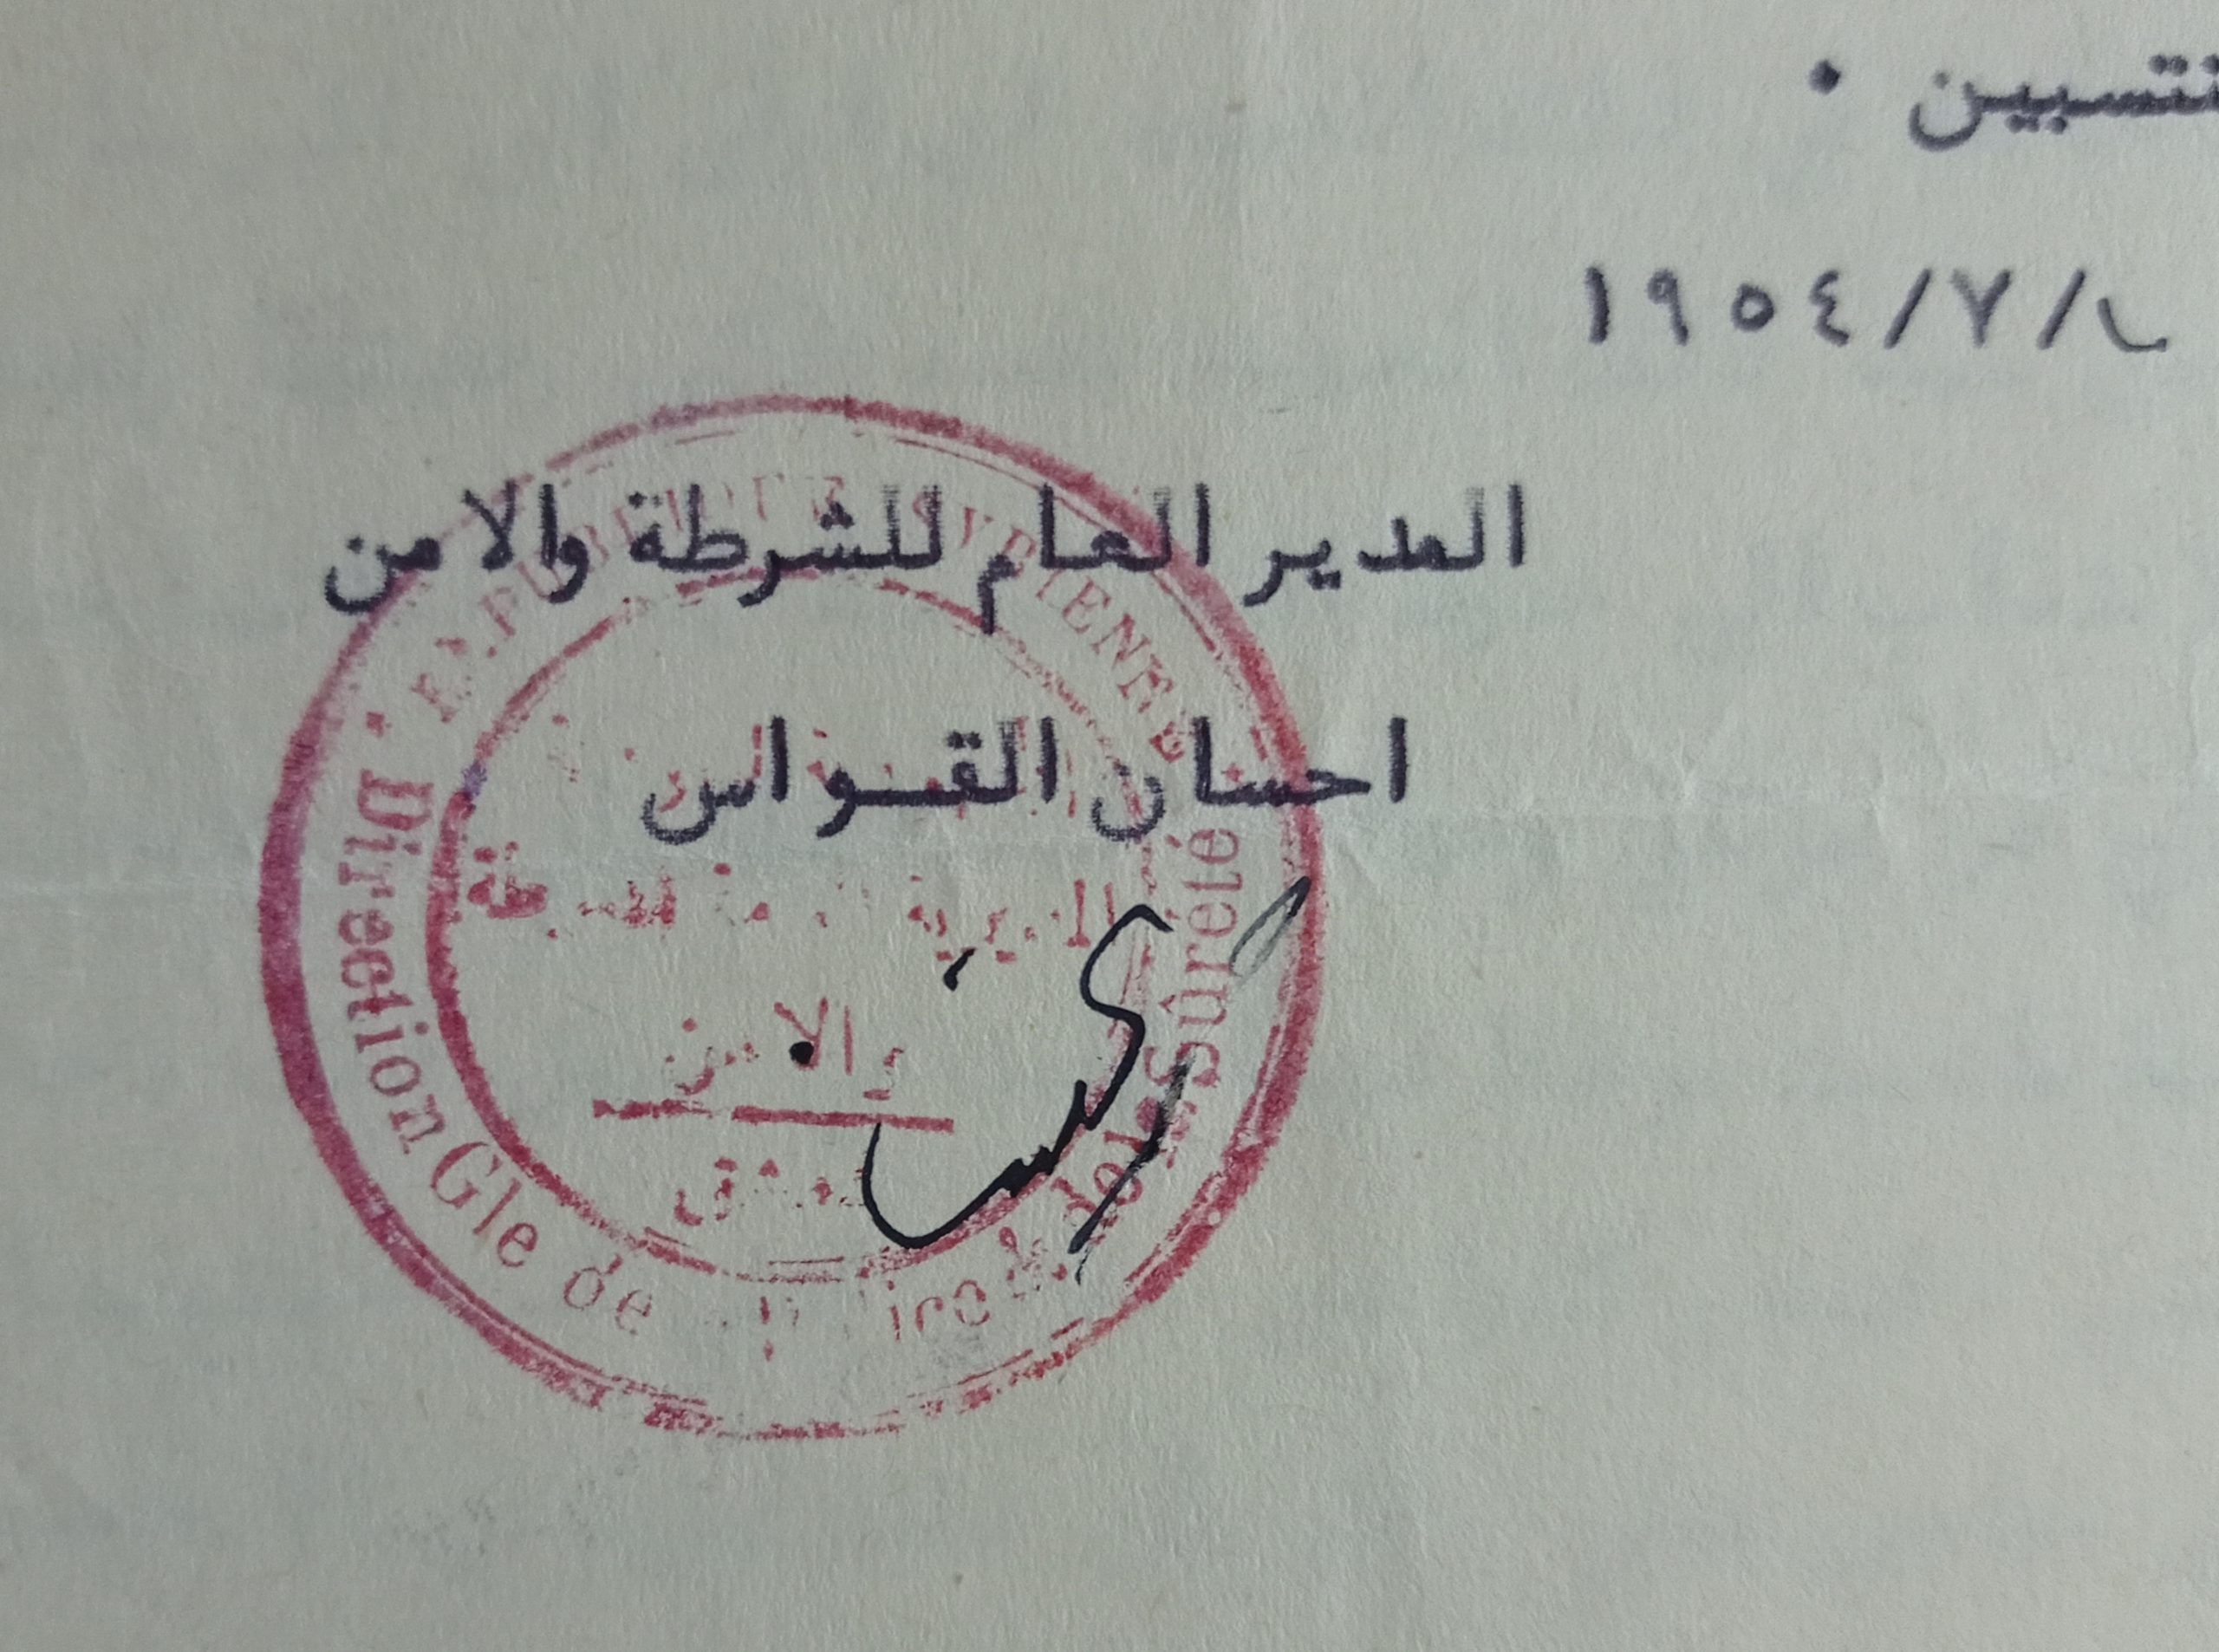 التاريخ السوري المعاصر - ختم المديرية العامة للشرطة والأمن بدمشق عام 1954م